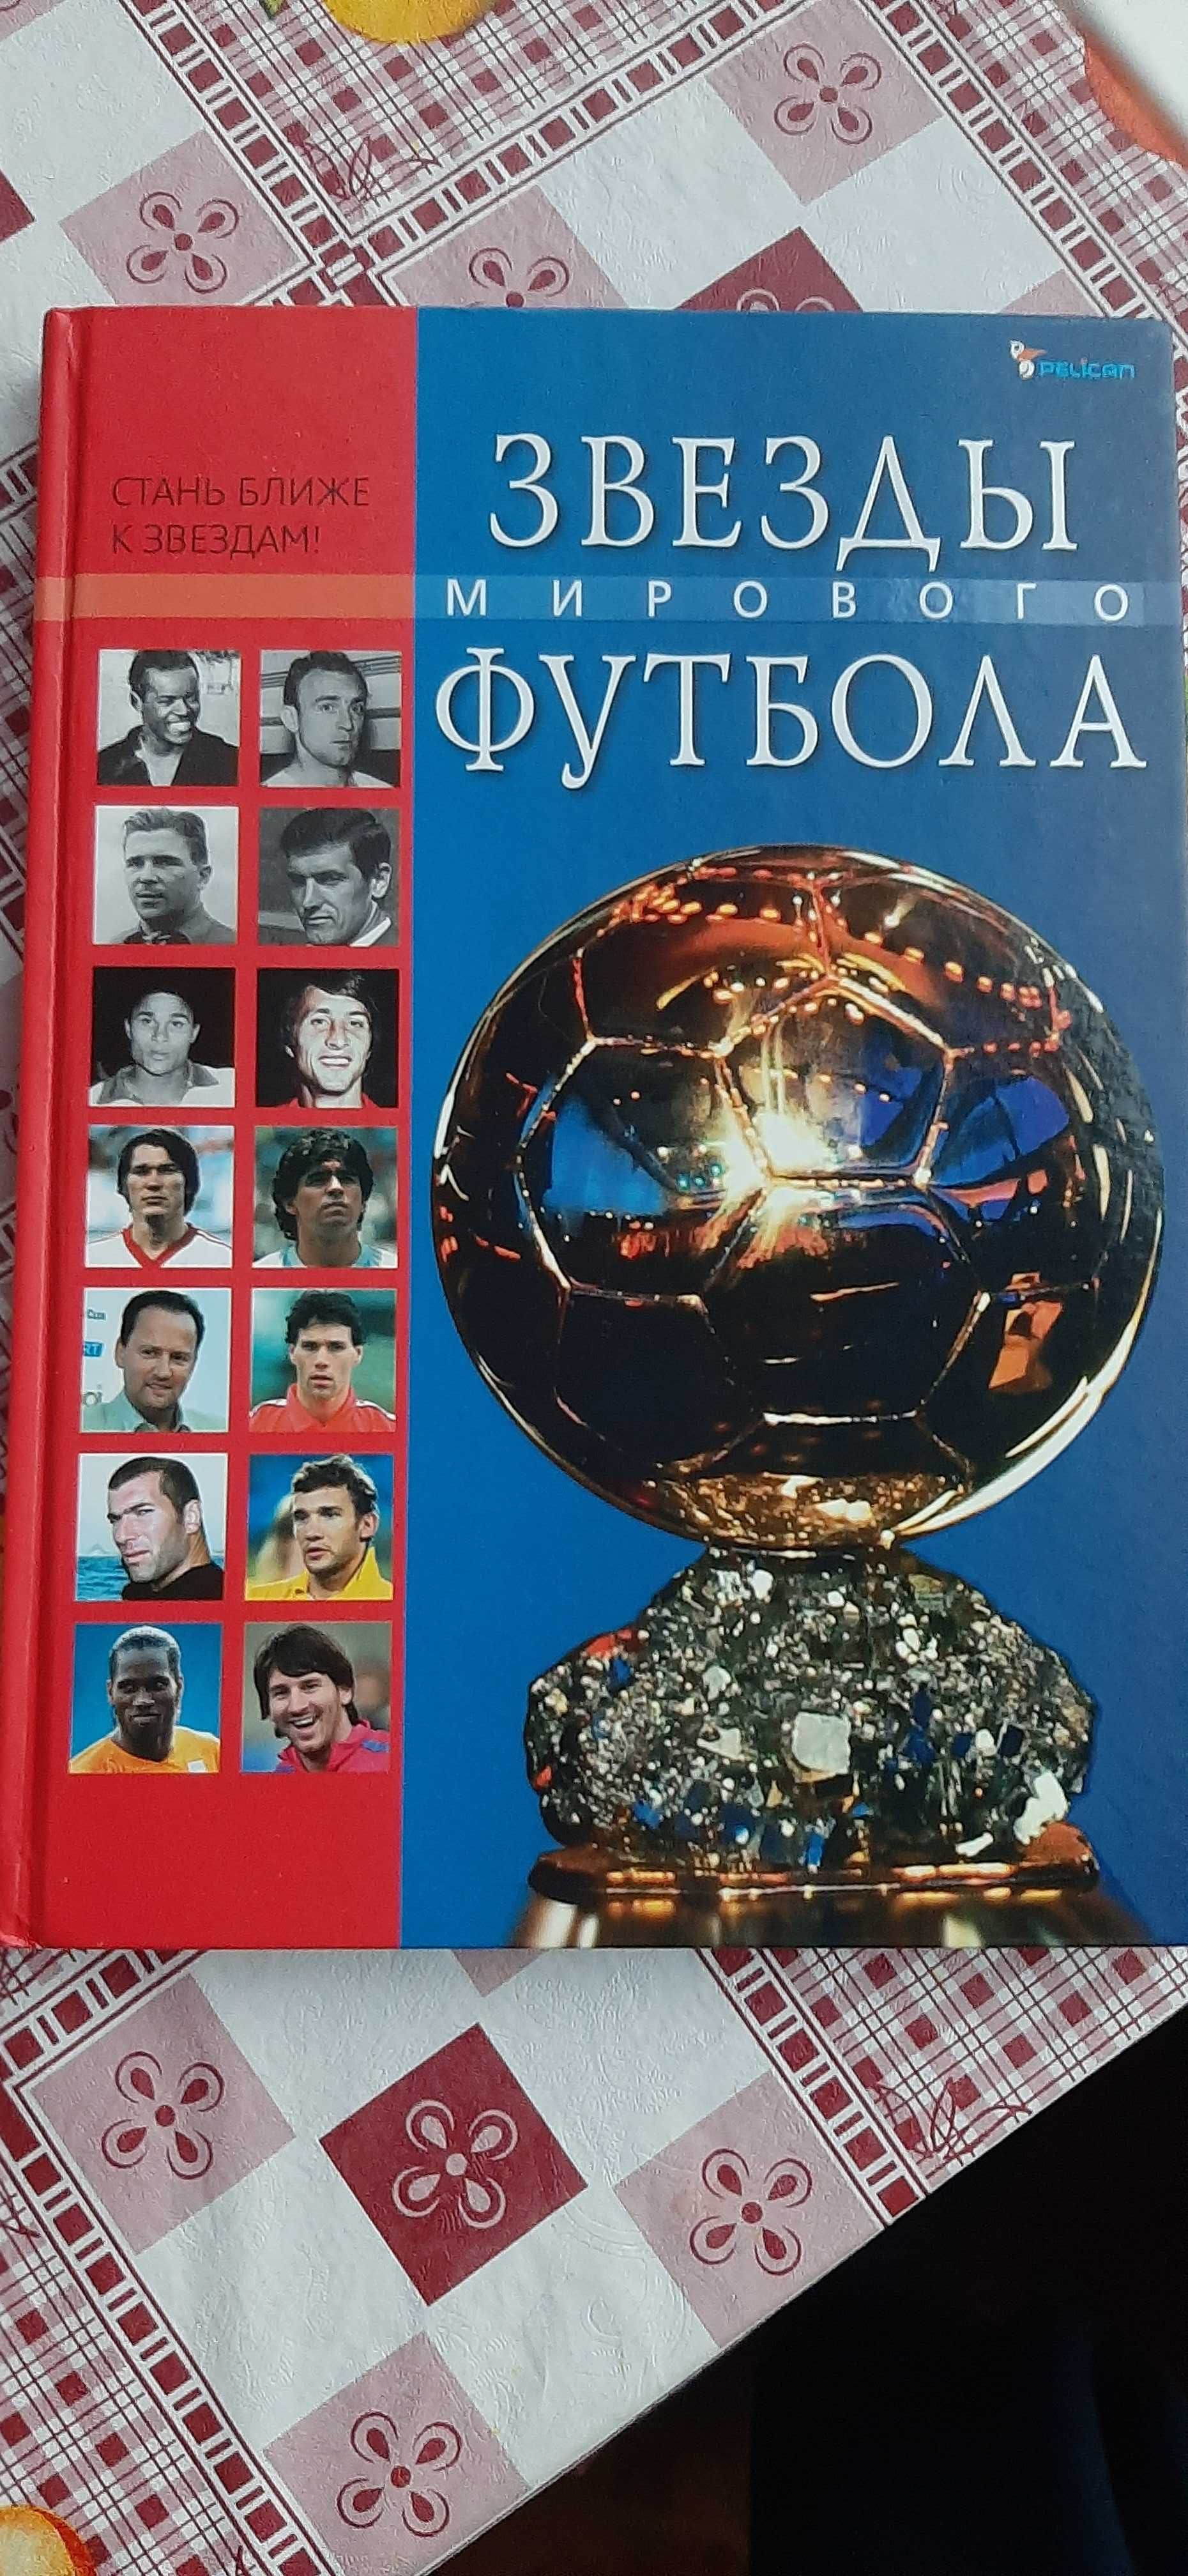 Футбол. Серия книг о футболе в 3-х томах (Изд-во Pelican)